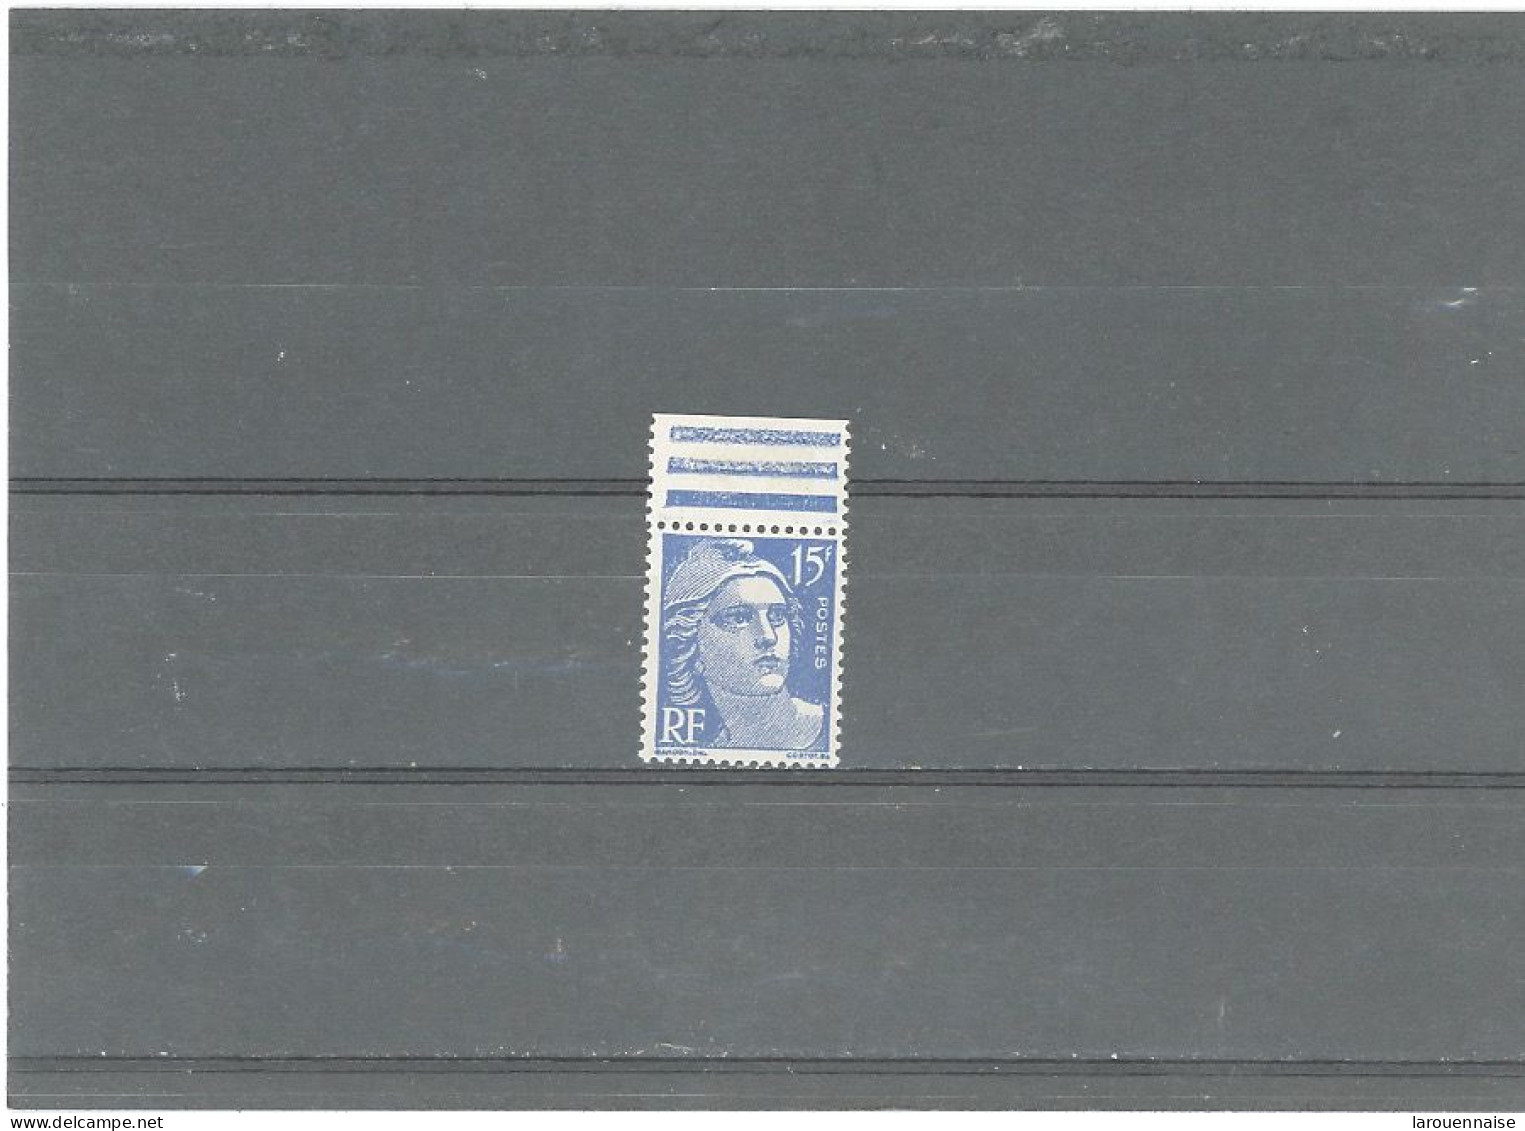 VARIÉTÉ -N°886 N** - GANDON 15 F BLEU -PIECING ( Petit Anneau Lune)ALA LÈVRE DE MARIANNE . - Unused Stamps